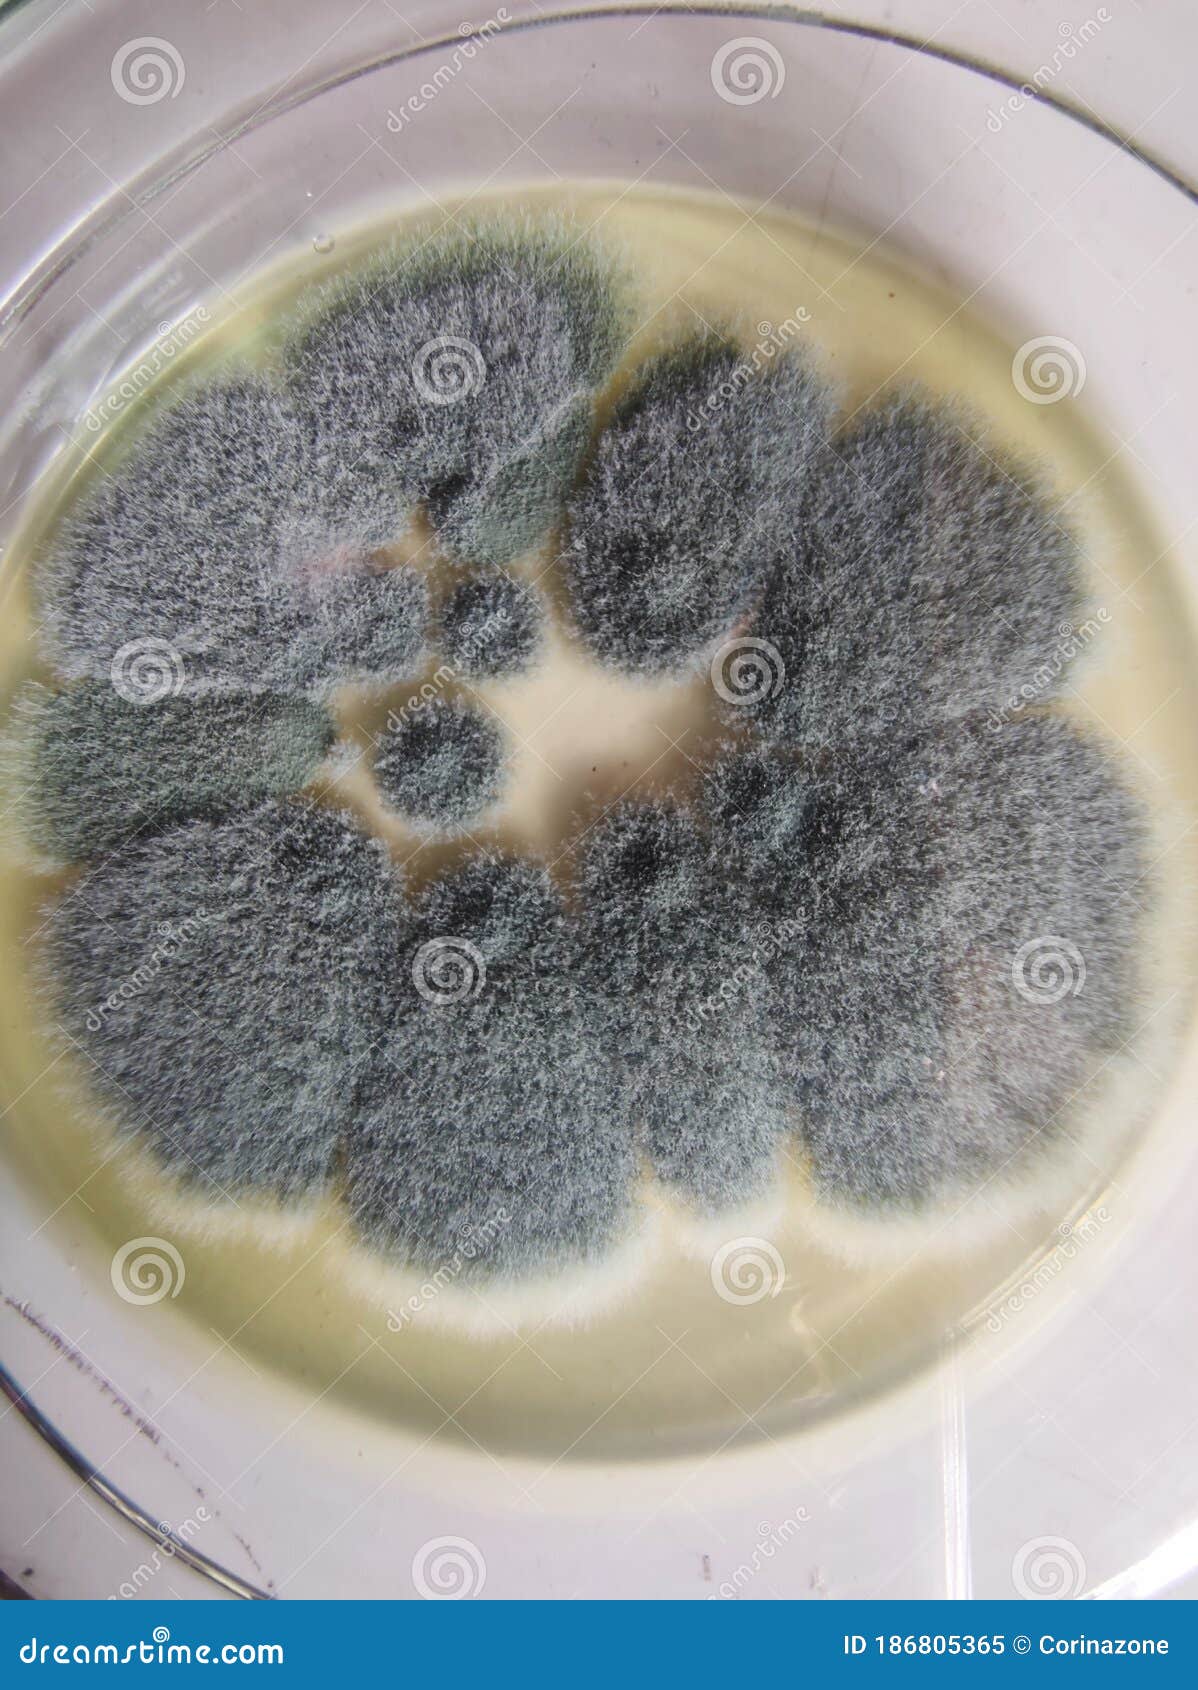 aspergillus fumigatus colonies on saboraud dextrose agar medium